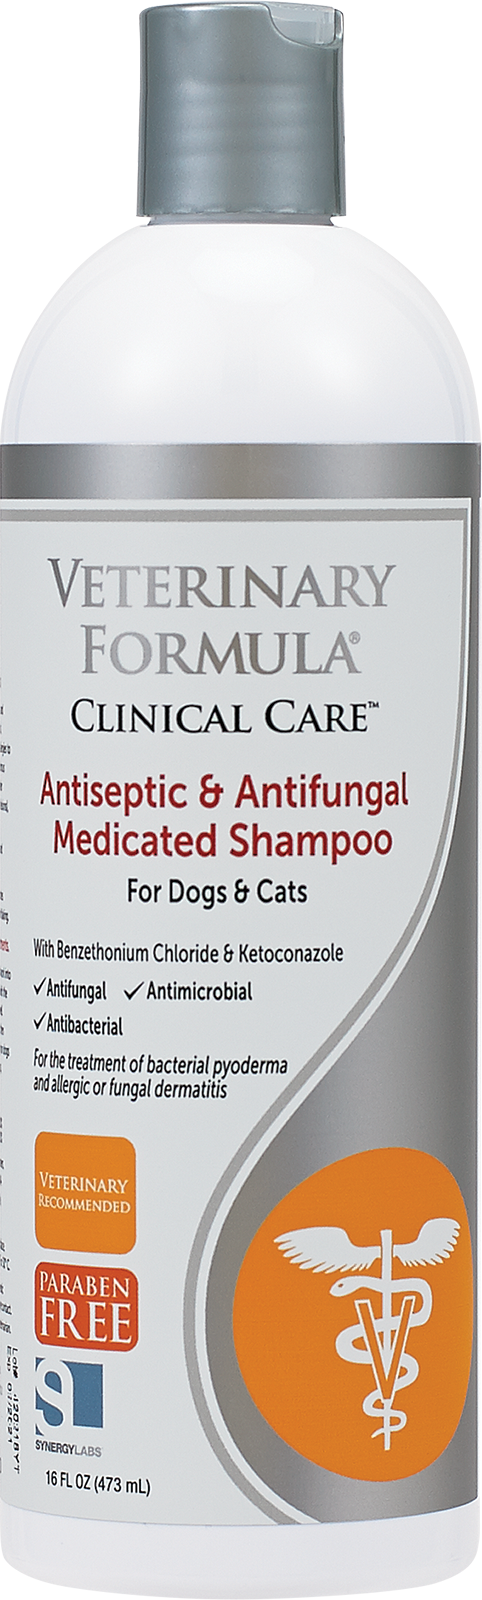 【Veterinary Formula】Antiseptic & Antifungal Medicated Shampoo - 16 oz